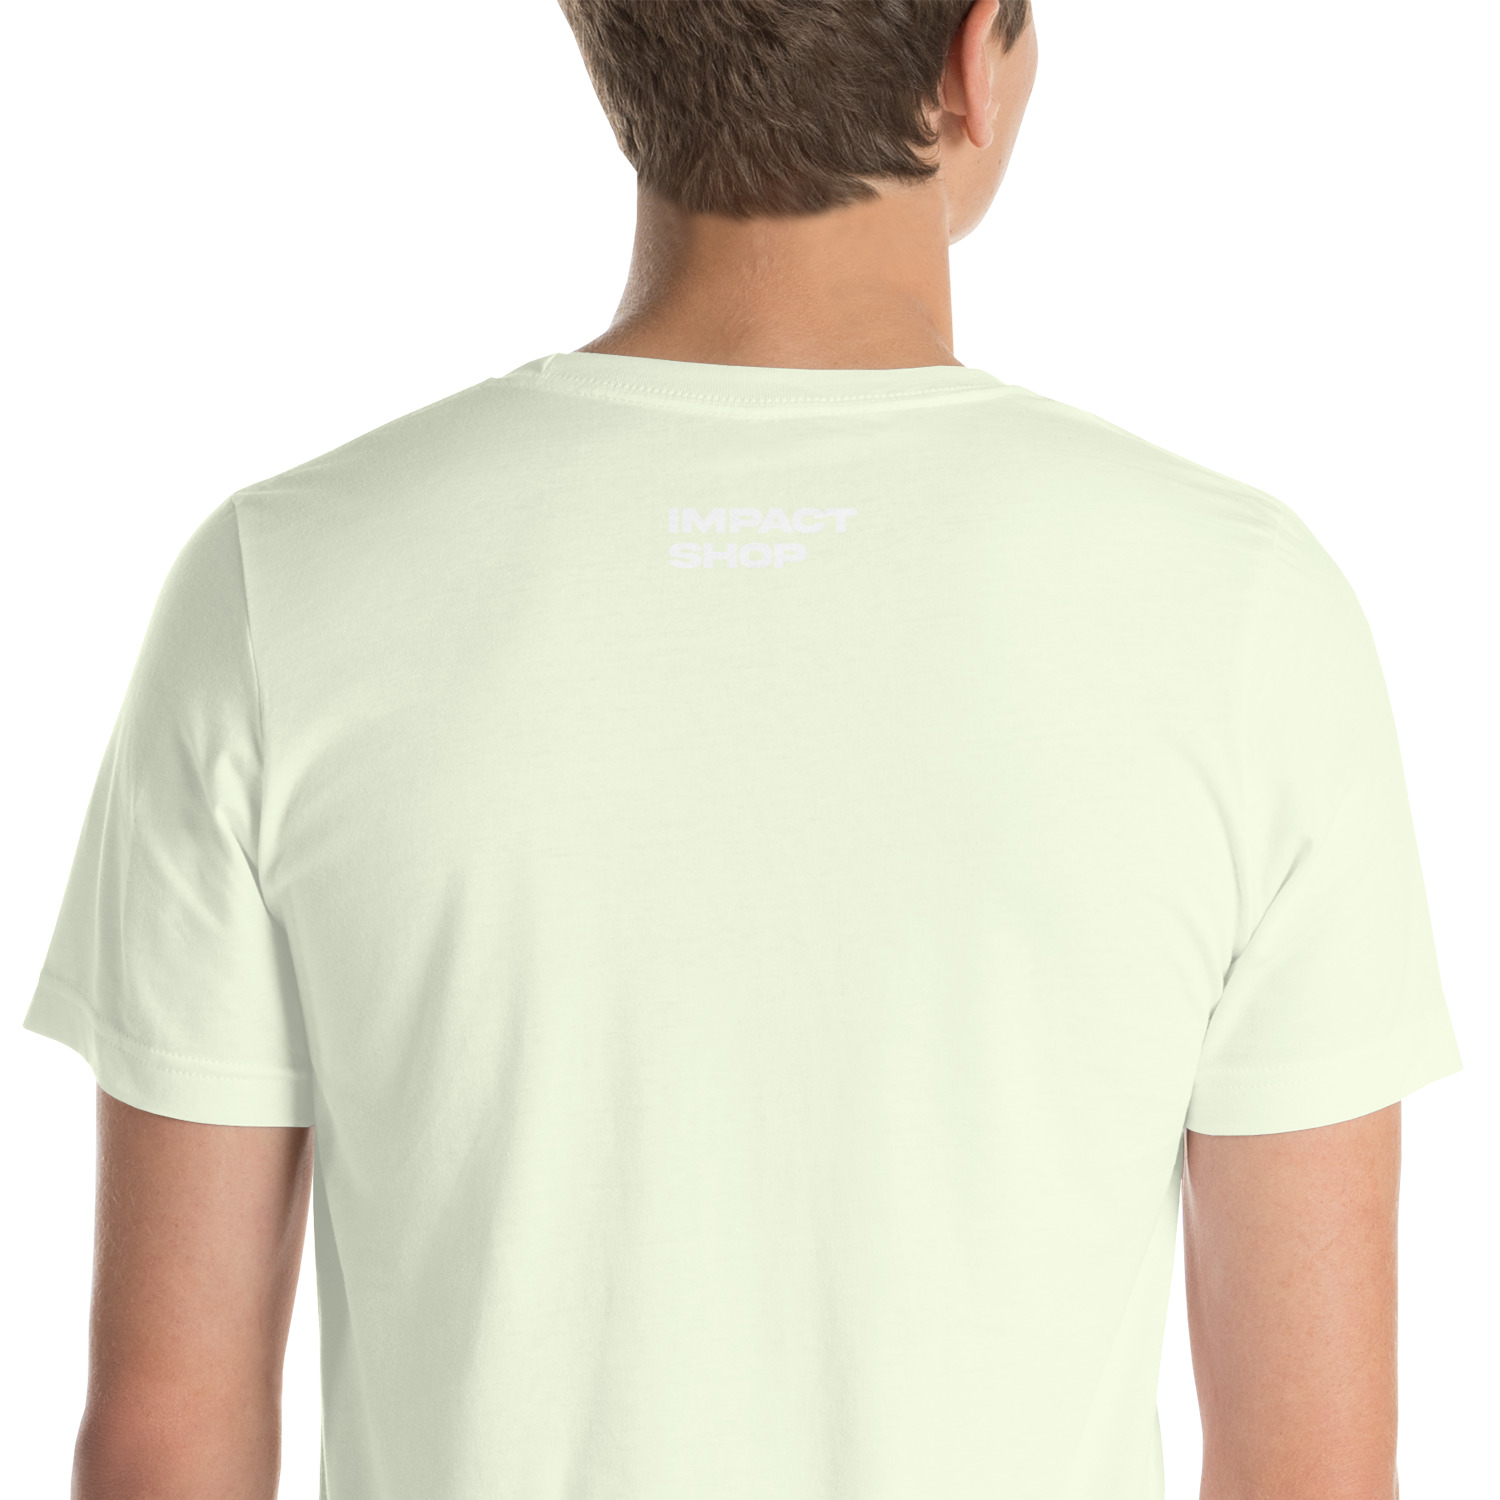 unisex-staple-t-shirt-citron-zoomed-in-63fced26291fc.jpg